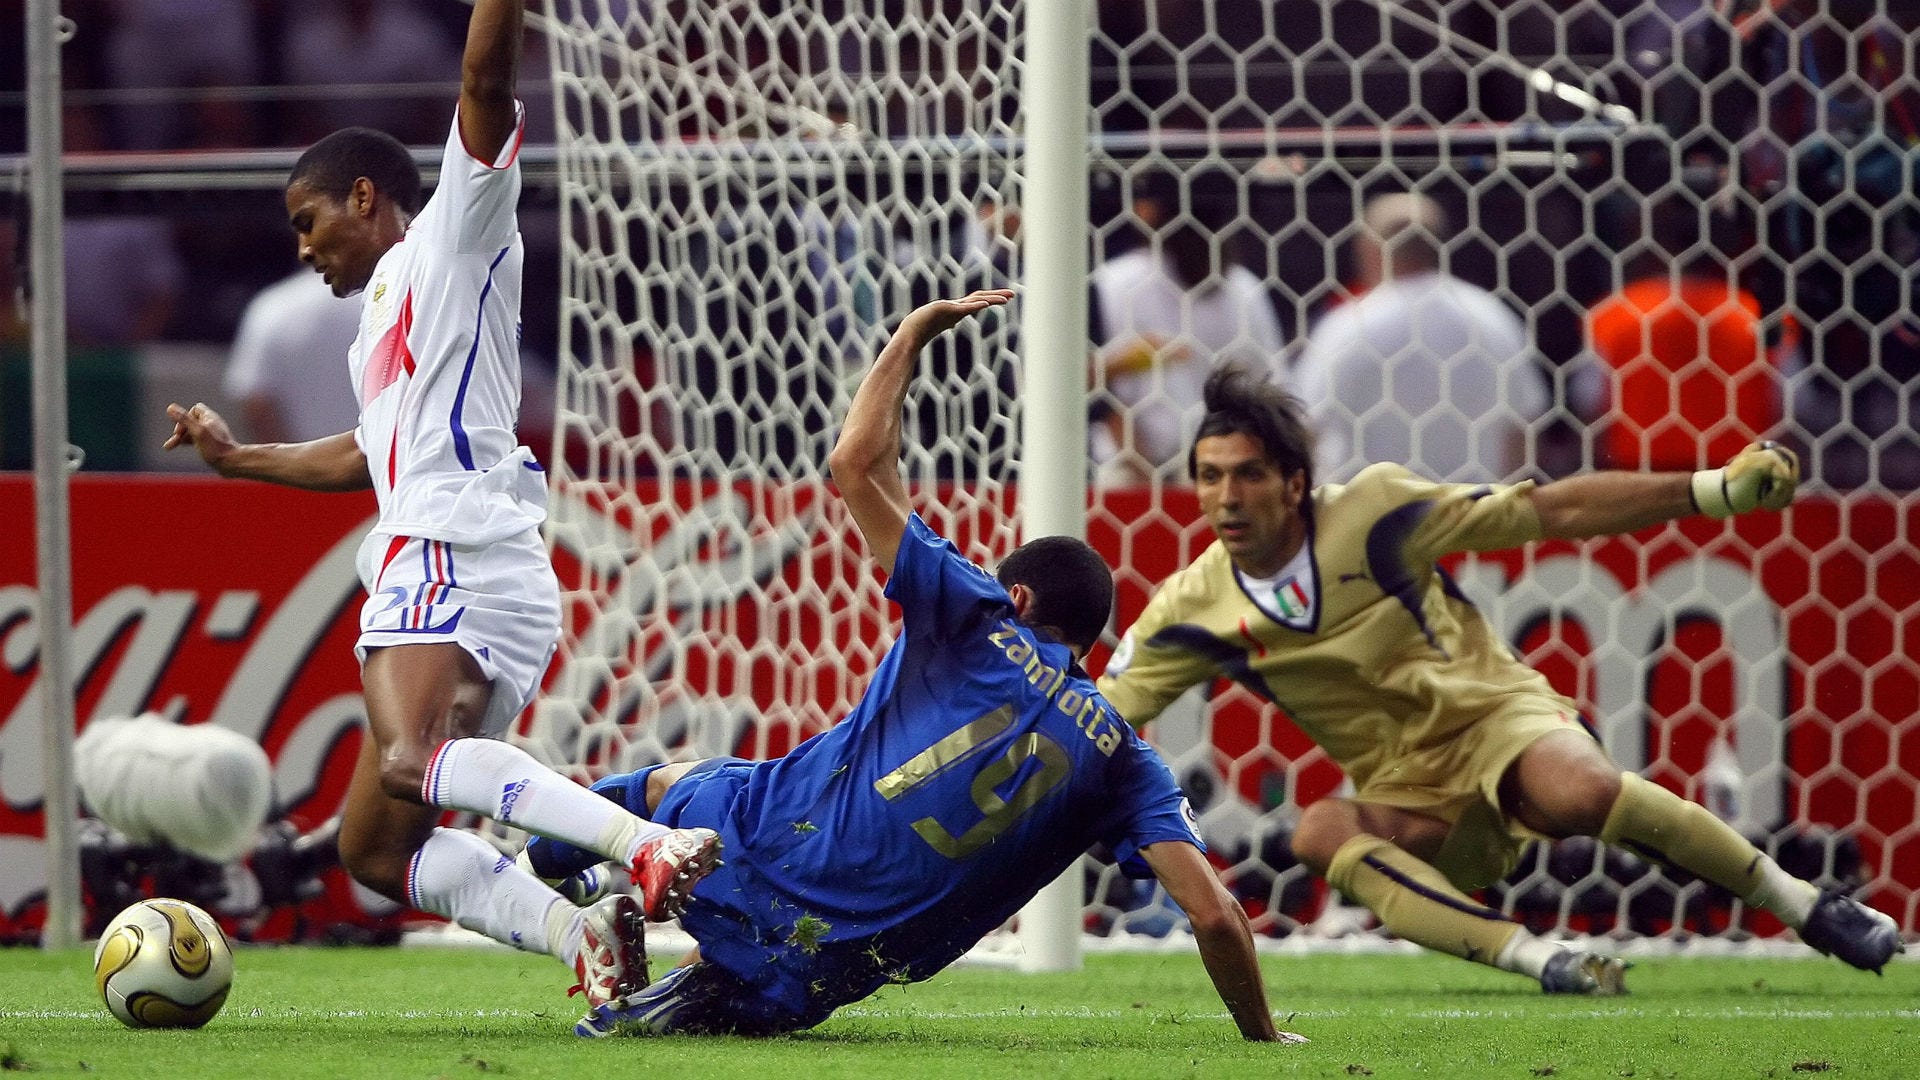 Италия франция составы. Италия Франция финал 2006. Финал ЧМ 2006 Франция-Италия. ЧМ 2006 финал пенальти. Франция Италия финал 2006 голы.